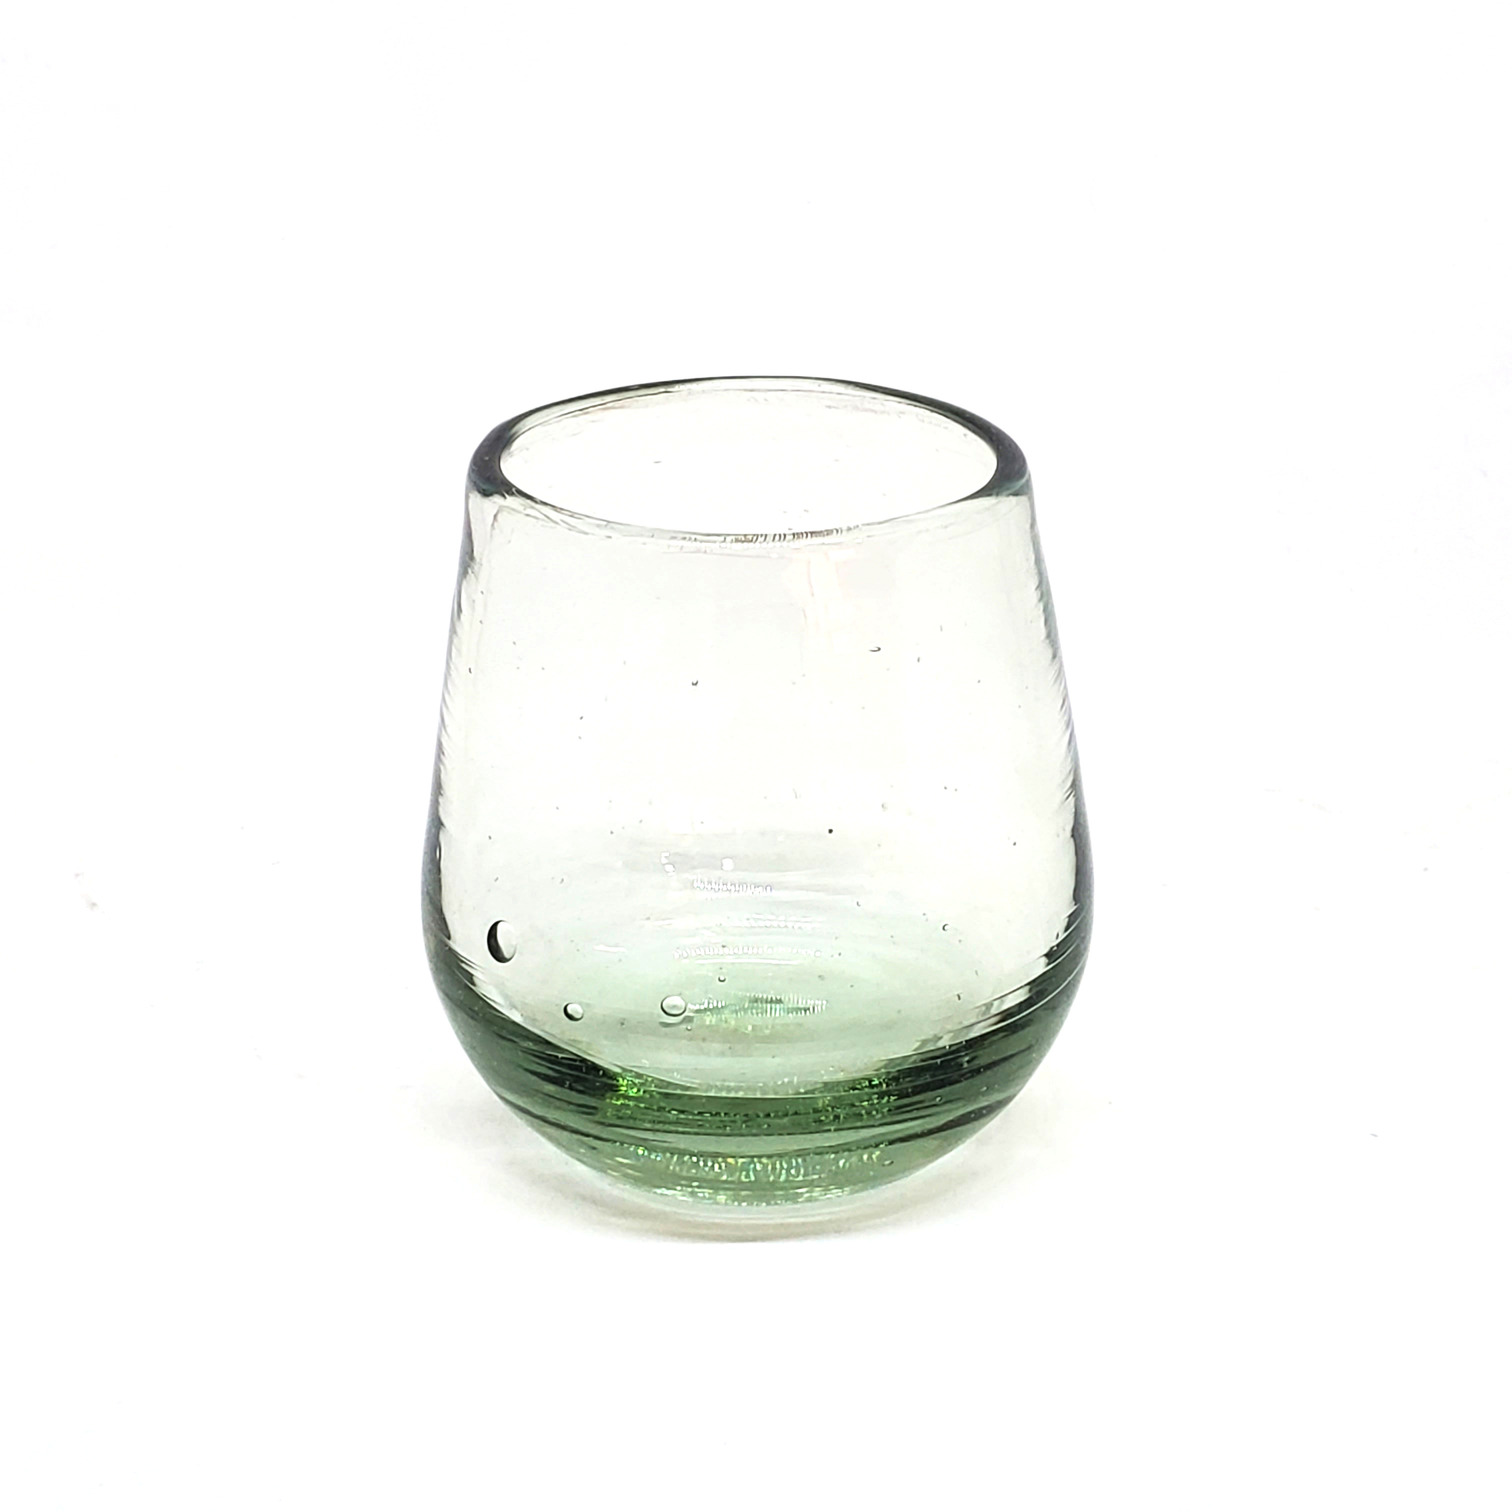 Novedades / Vasos Roly Poly Transparente (Juego de 6) / Nuestros vasos transparentes son fabricados uno por uno a base de vidrio reciclado, haciéndolos obras de arte únicas.